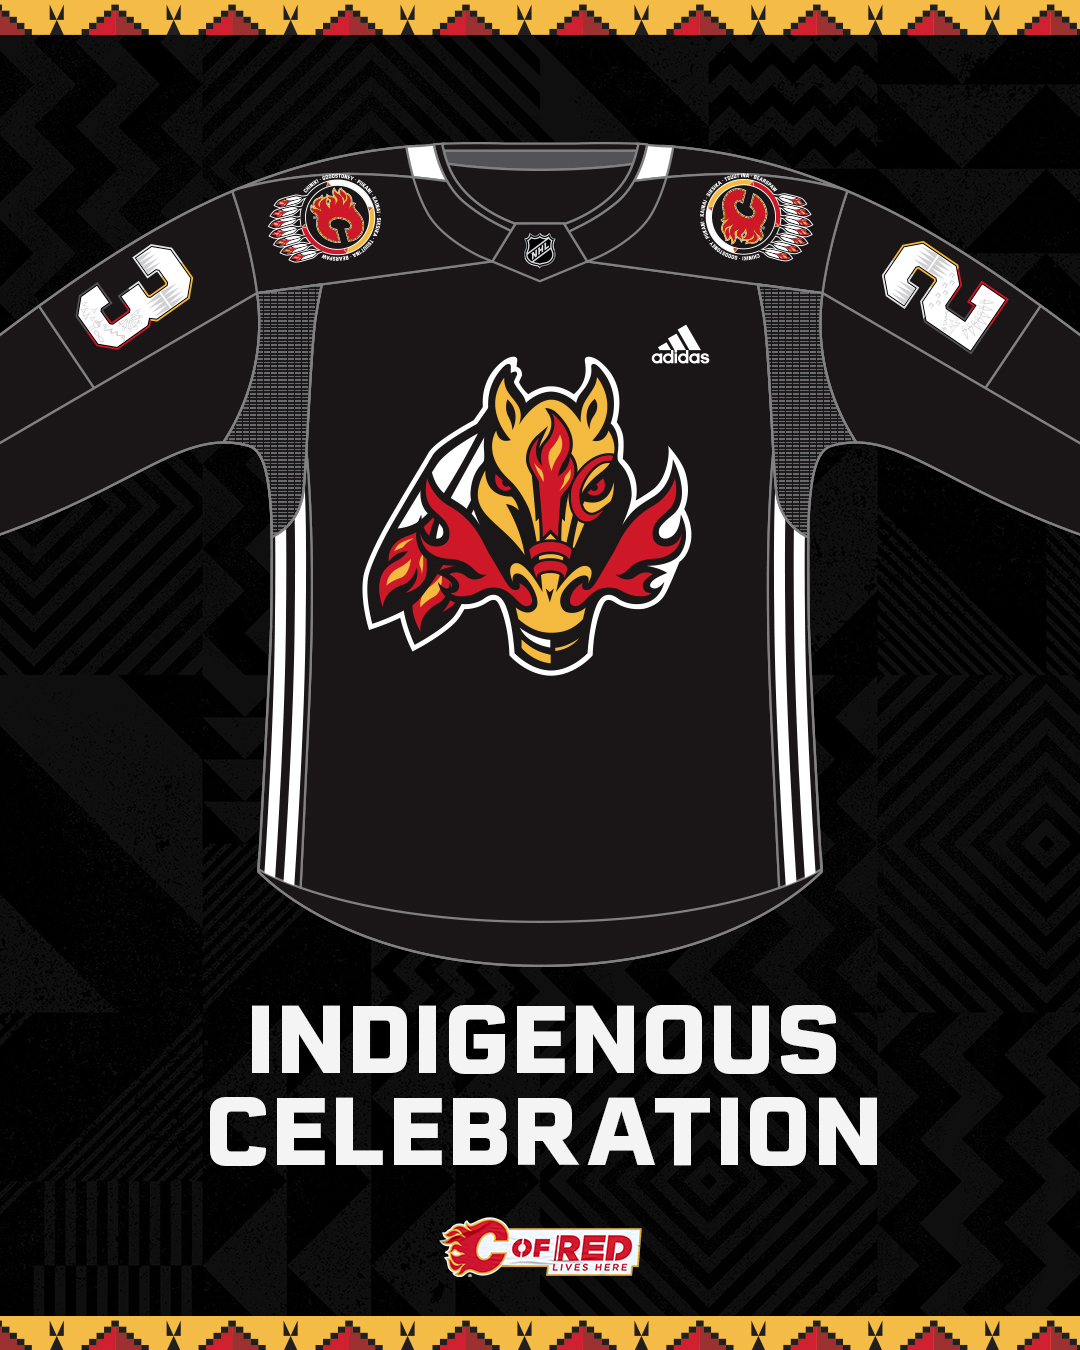 Calgary Flames on X: Our amazing Indigenous Celebration signed